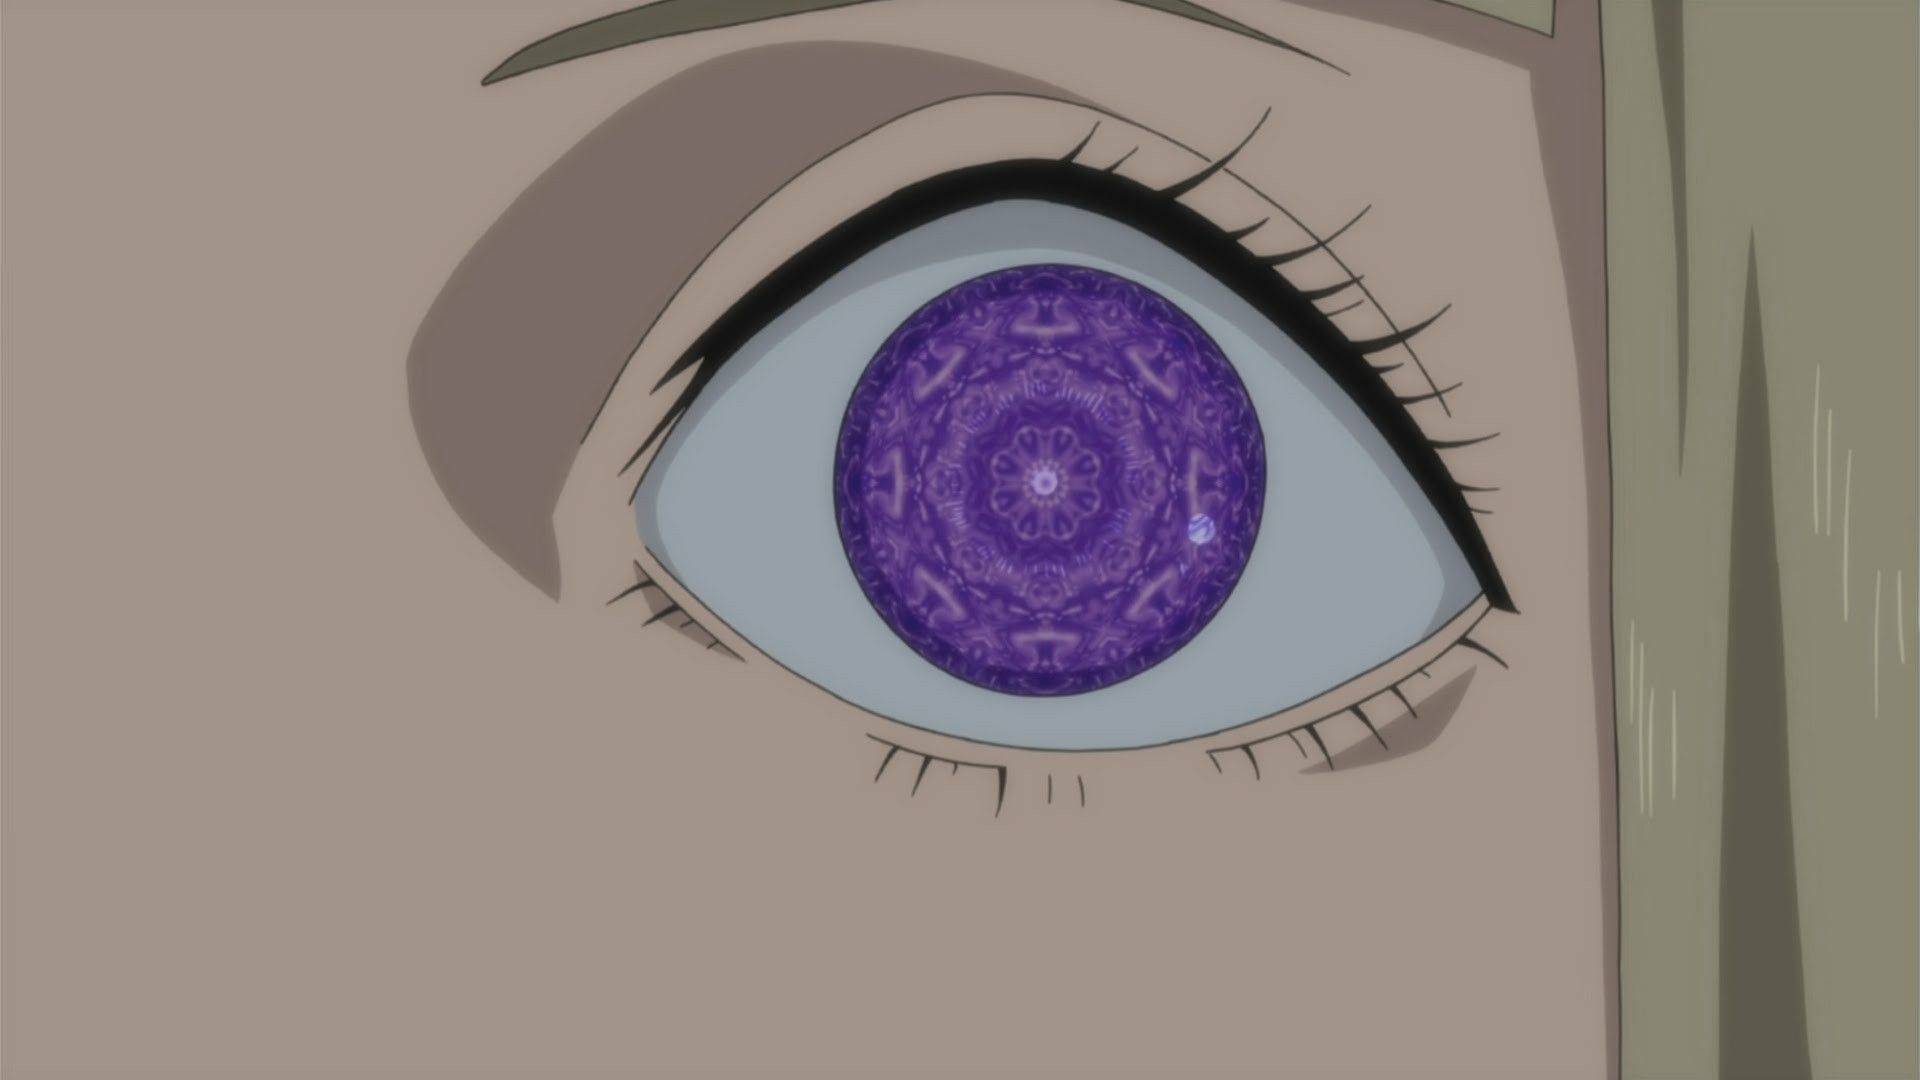 Afinal, qual é o olho mais fraco de Naruto Shippuden?